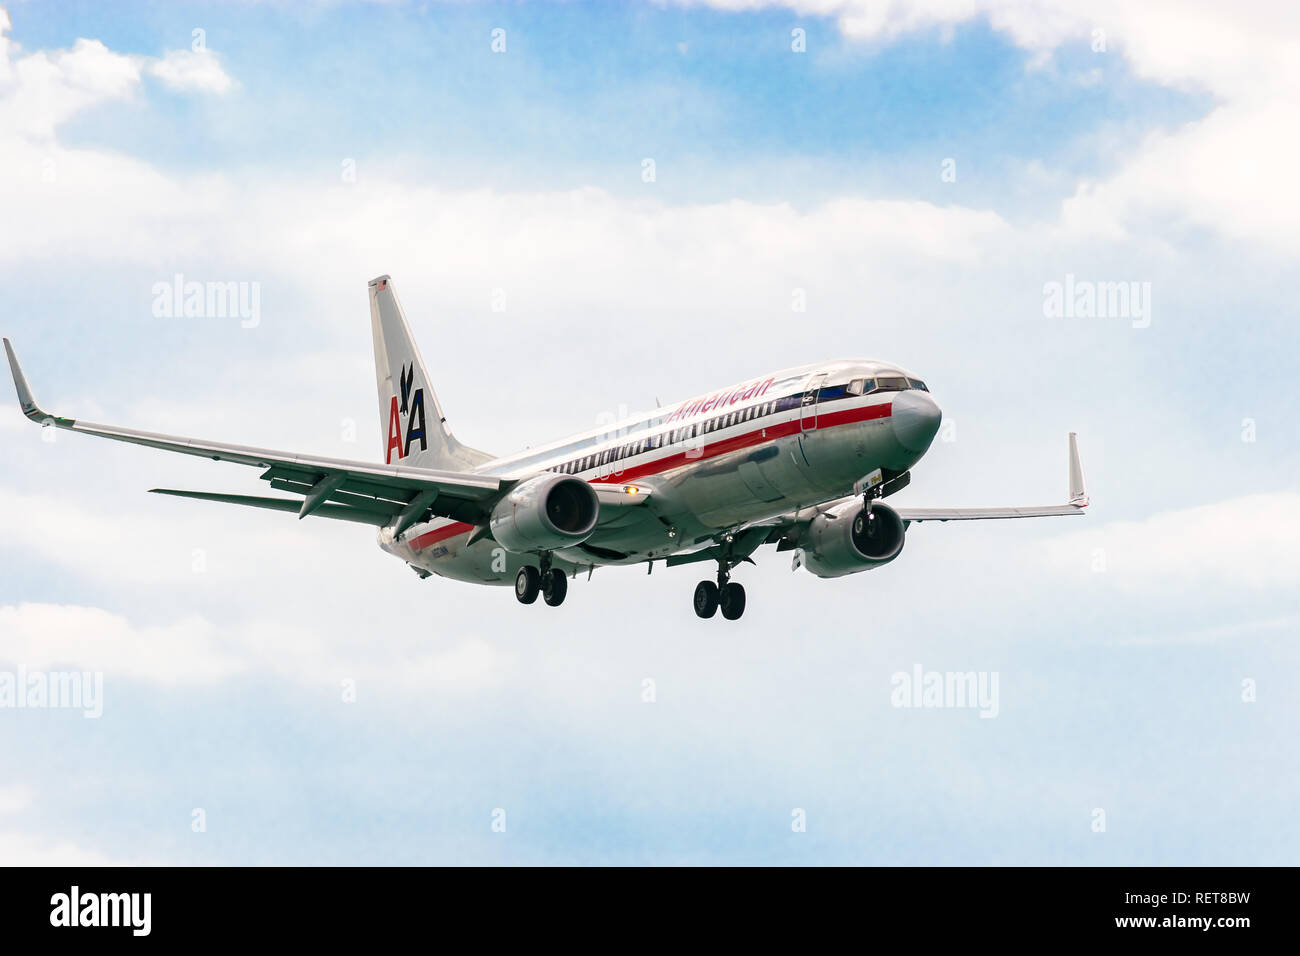 Montego Bay, Jamaïque - 19 Février 2017 : American Airlines se prépare à atterrir à l'aéroport international de Sangster (MBJ) à Montego Bay Banque D'Images